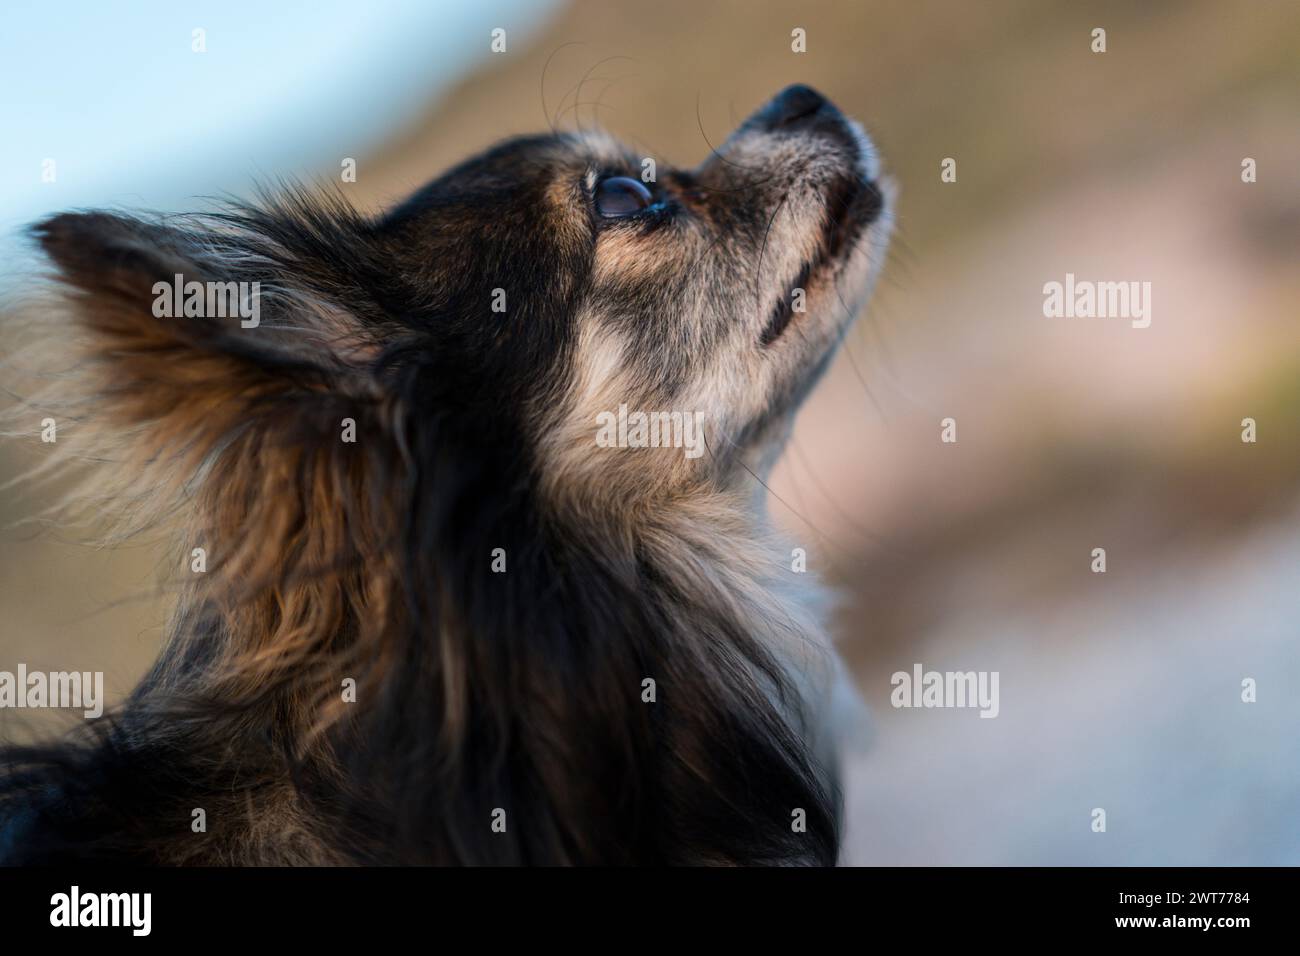 Piccolo cane chihuahua in profilo e guardando in alto. Dettaglio della testa, profondità di campo ridotta, sfondo fuori fuoco. Foto Stock